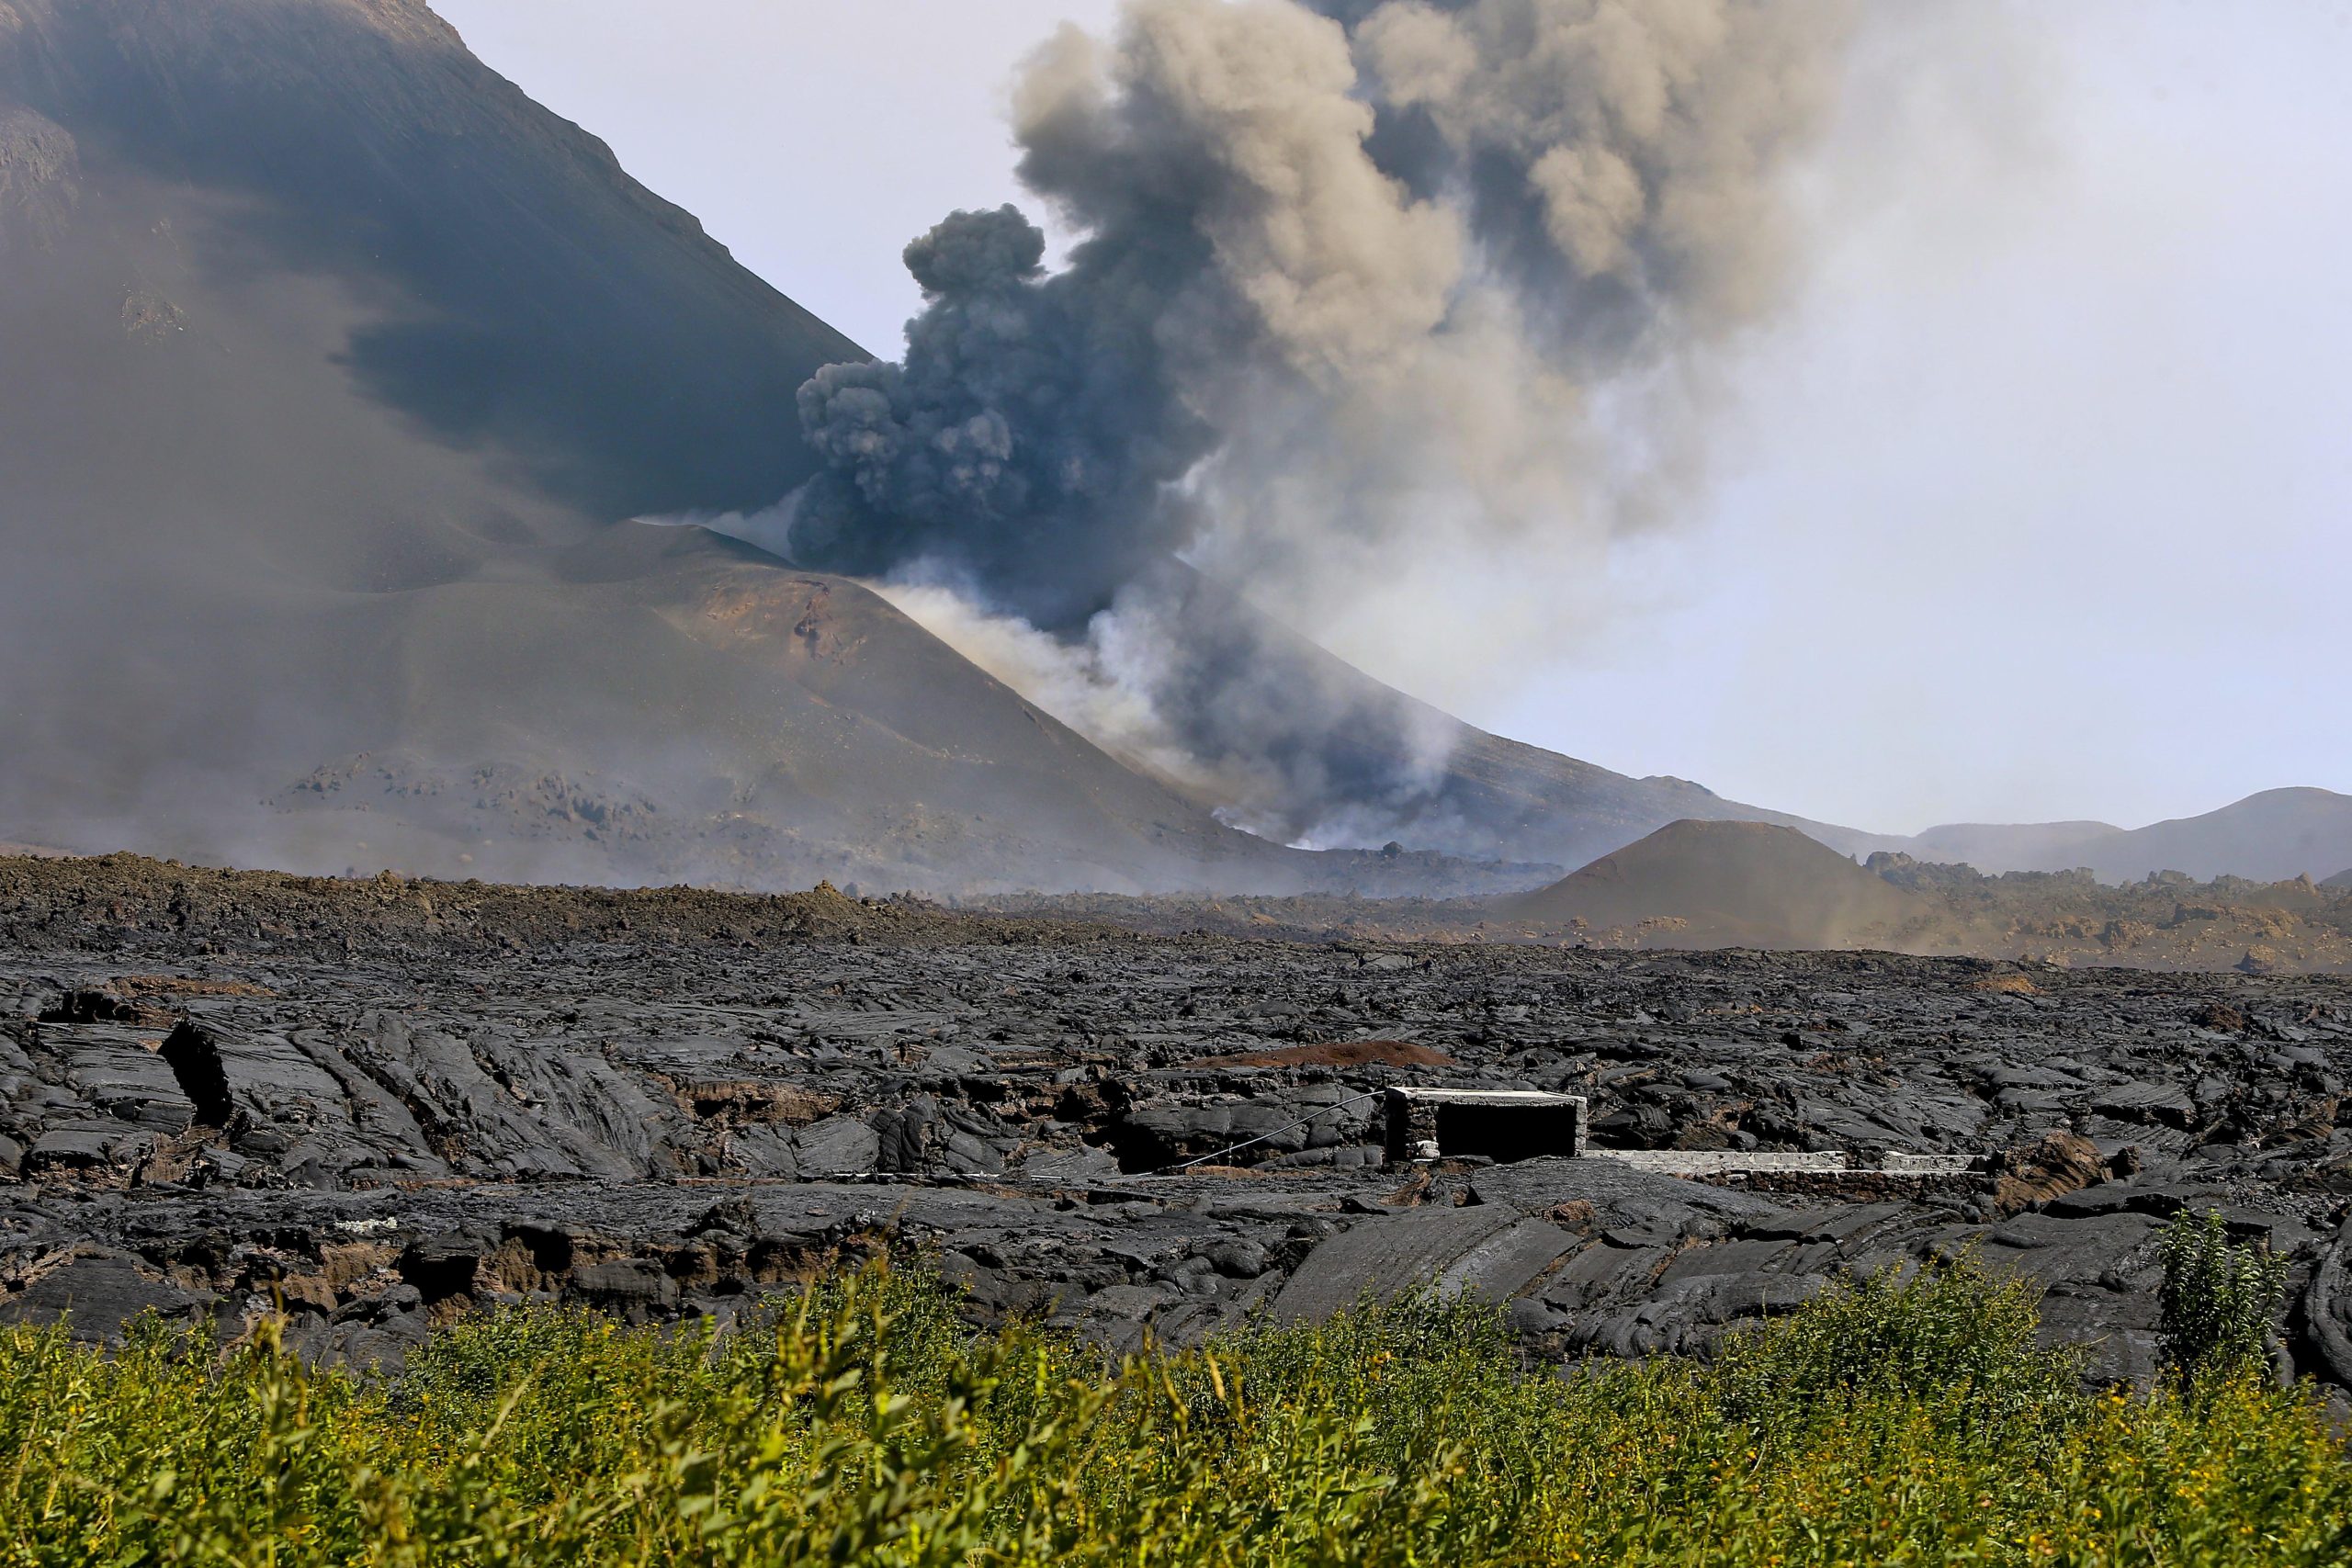 Atmosfera contaminada impediu helicóptero português de sobrevoar vulcão do Fogo